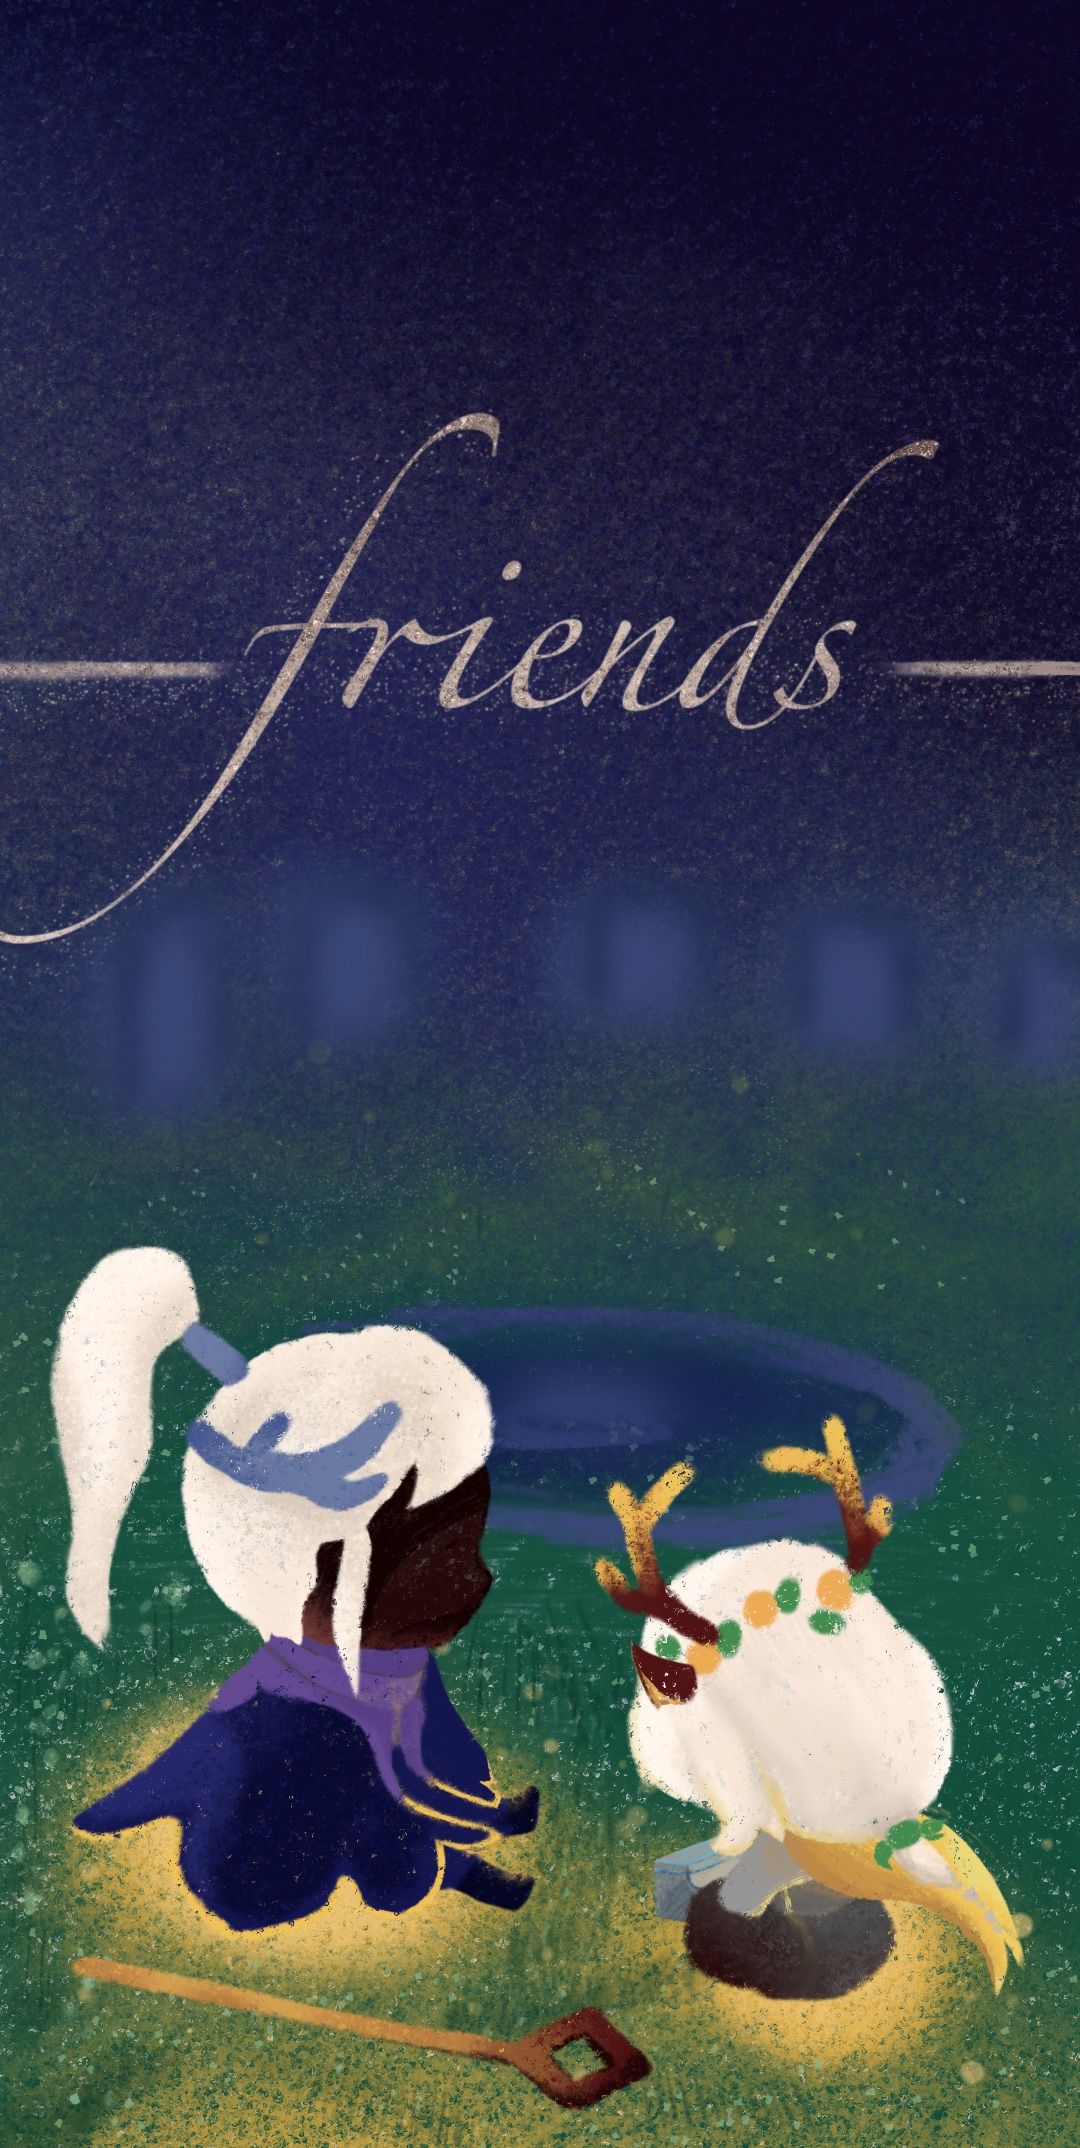 Sky丶Friends插画图片壁纸